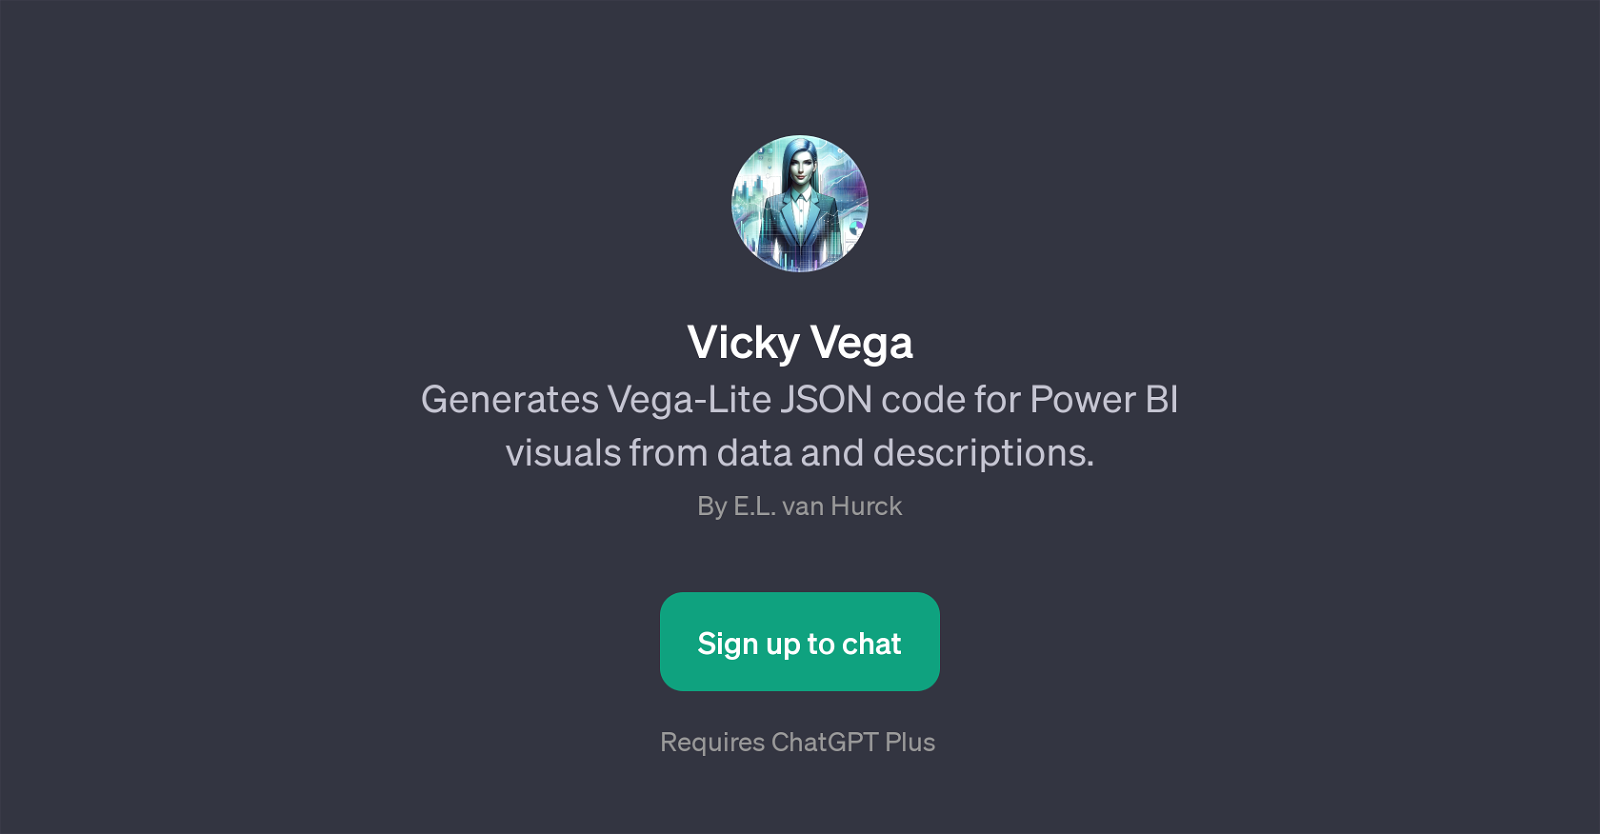 Vicky Vega website